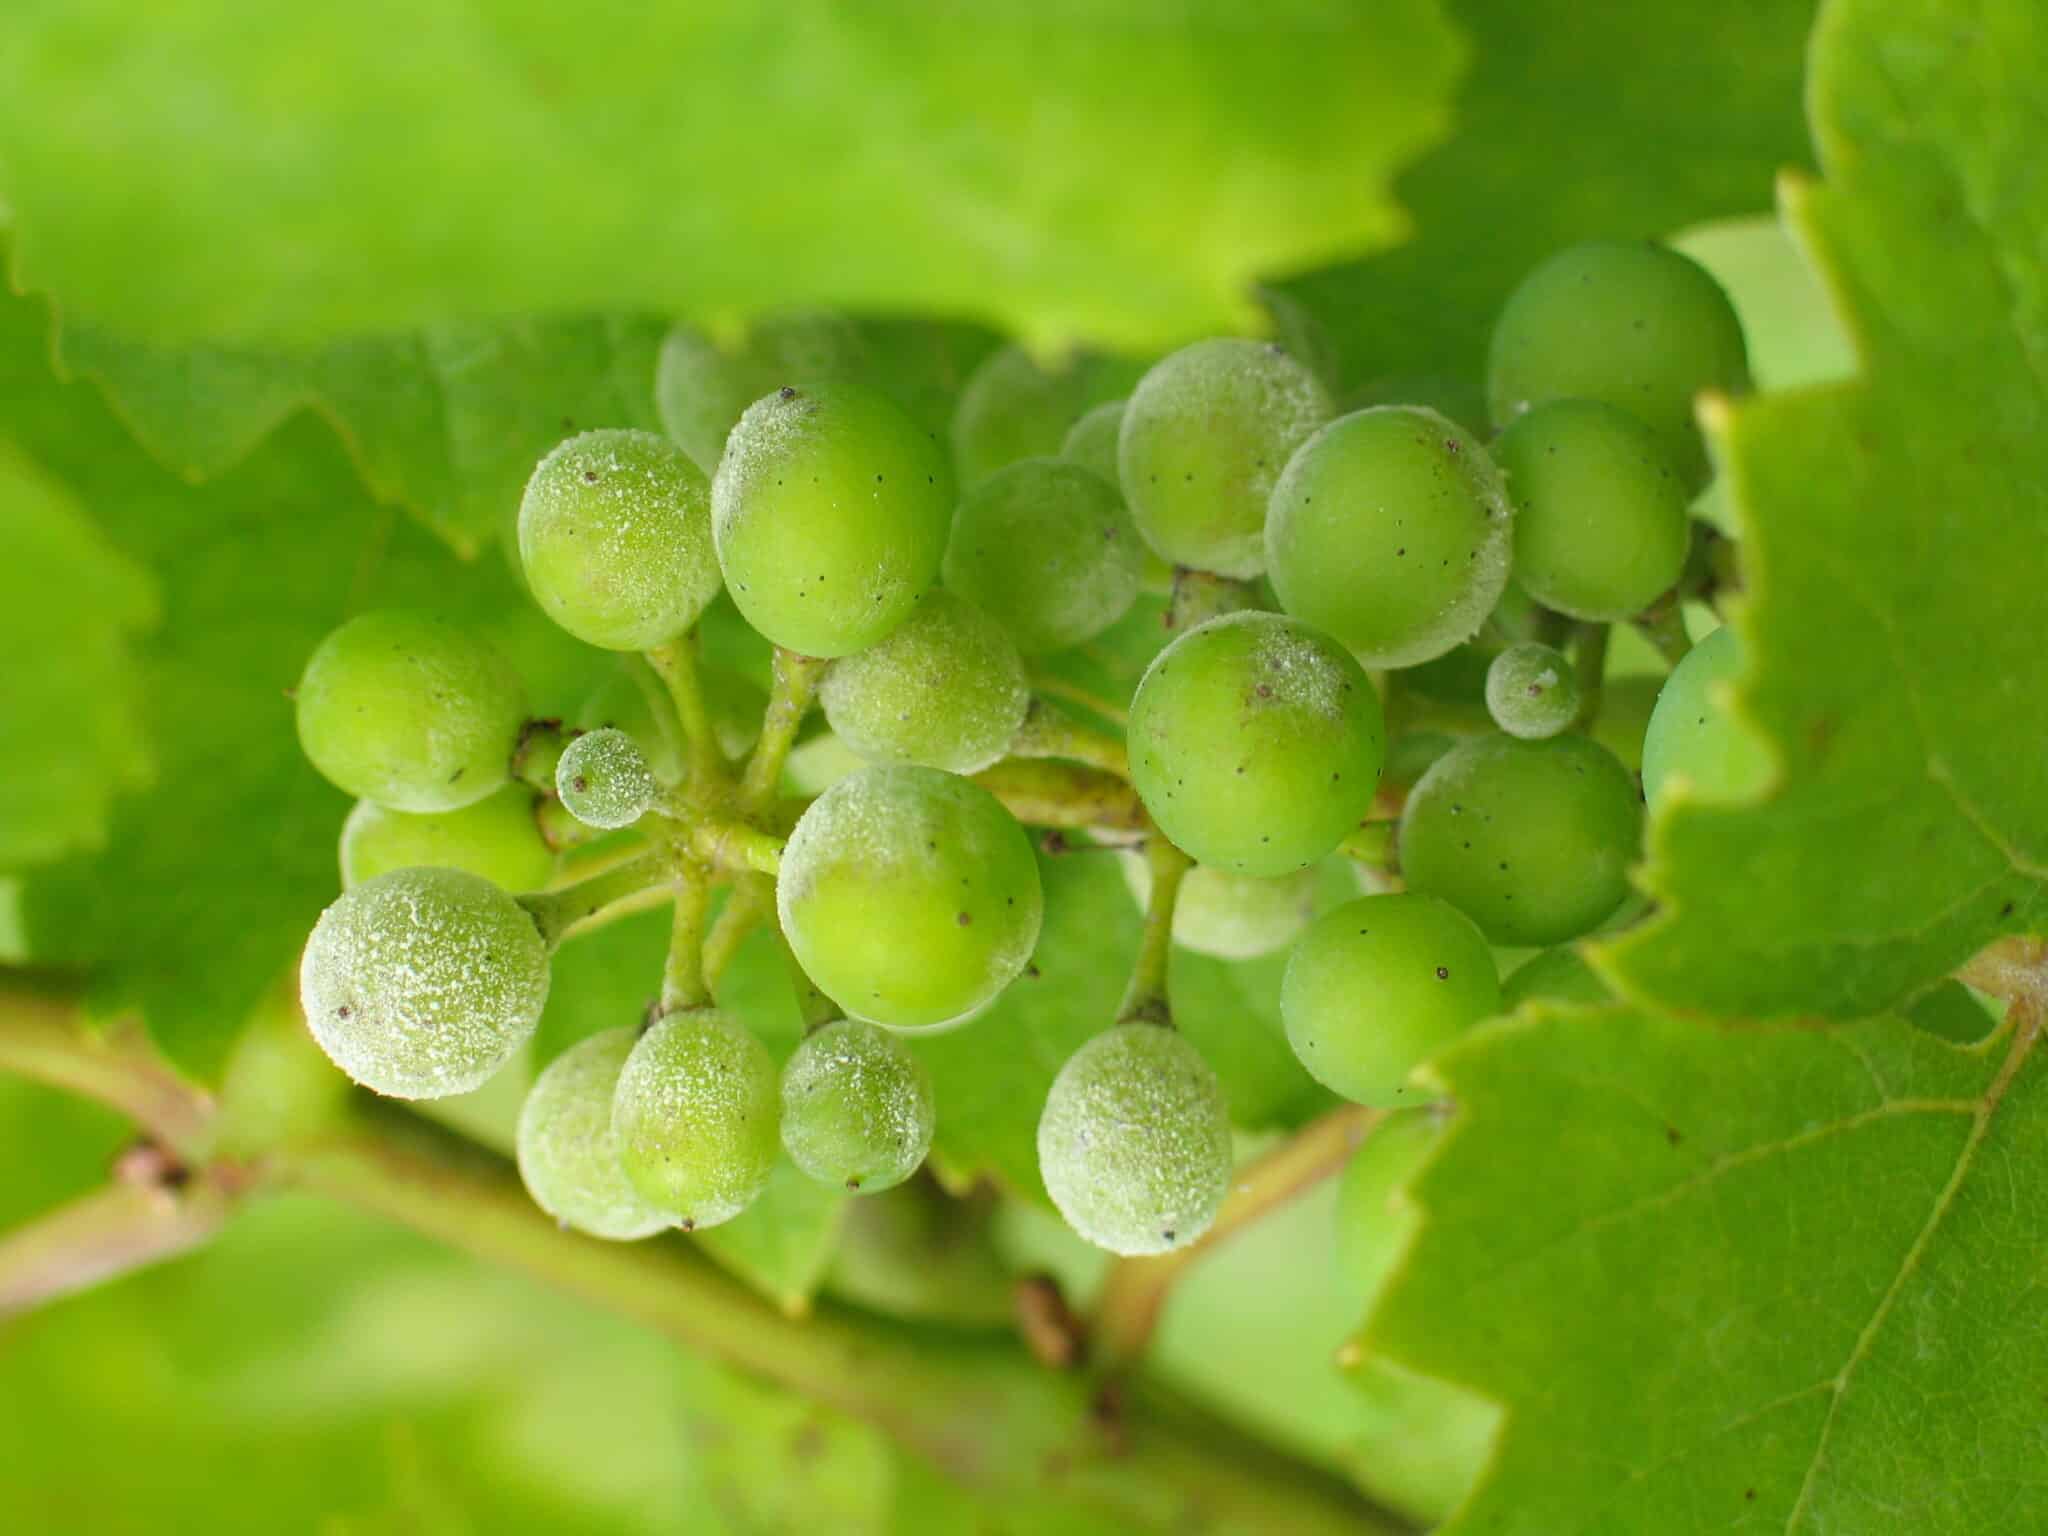 Uncinula necator (powdery mildew) on grapes. Photo credit: Maccheek at English Wikipedia